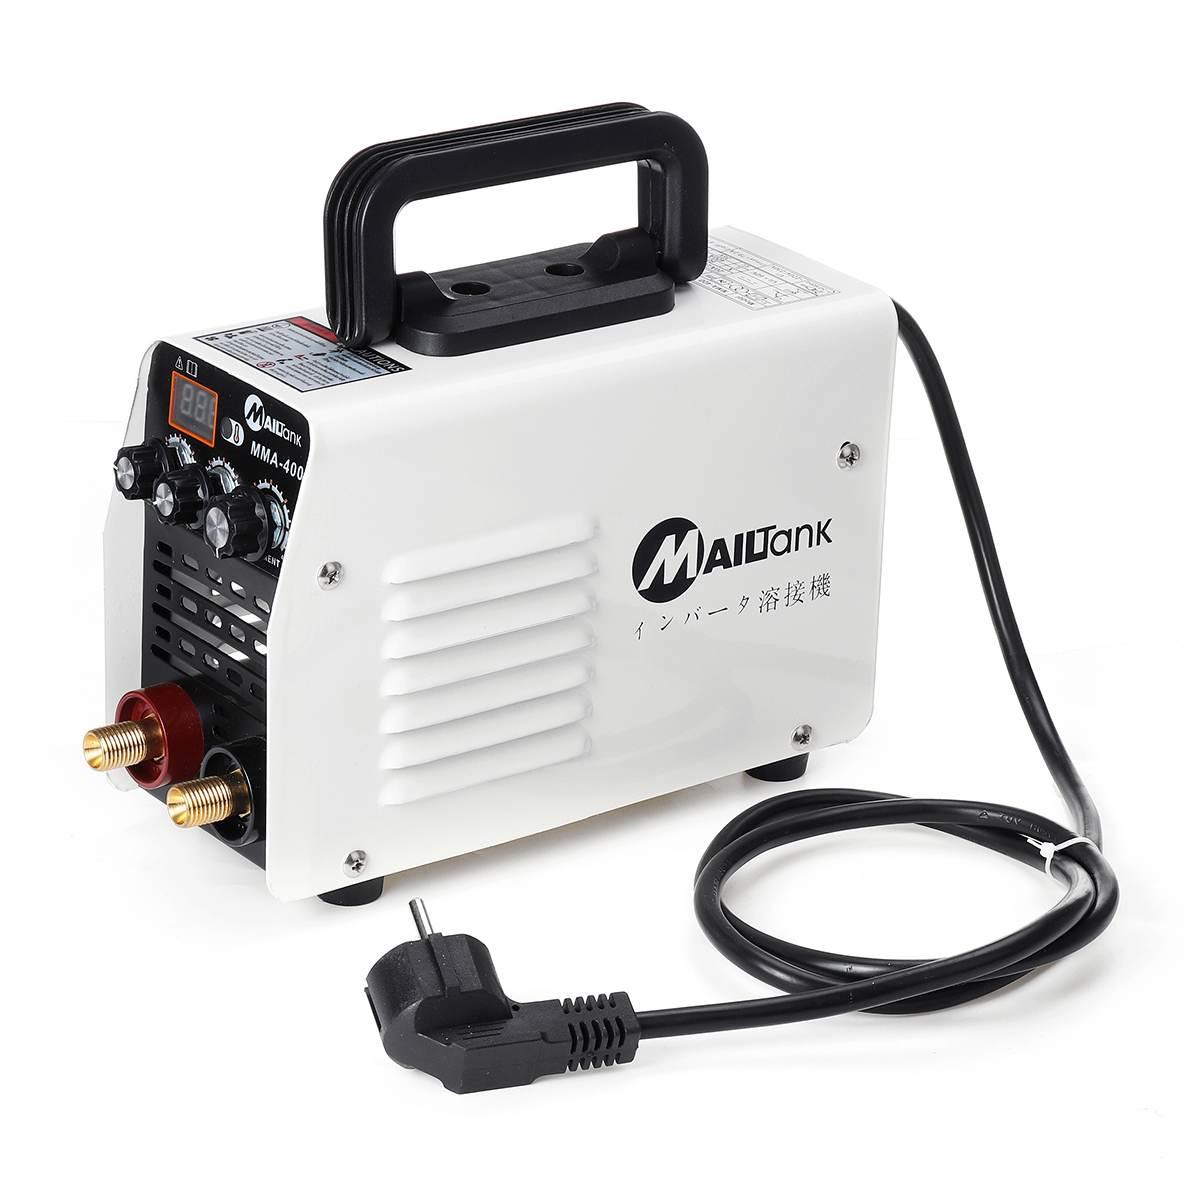 Изображение товара: IGBT Mini 220V 400A инвертор горячий запуск MMA дуговой сварочный аппарат инструменты для сварки работ электрических работ с аксессуарами